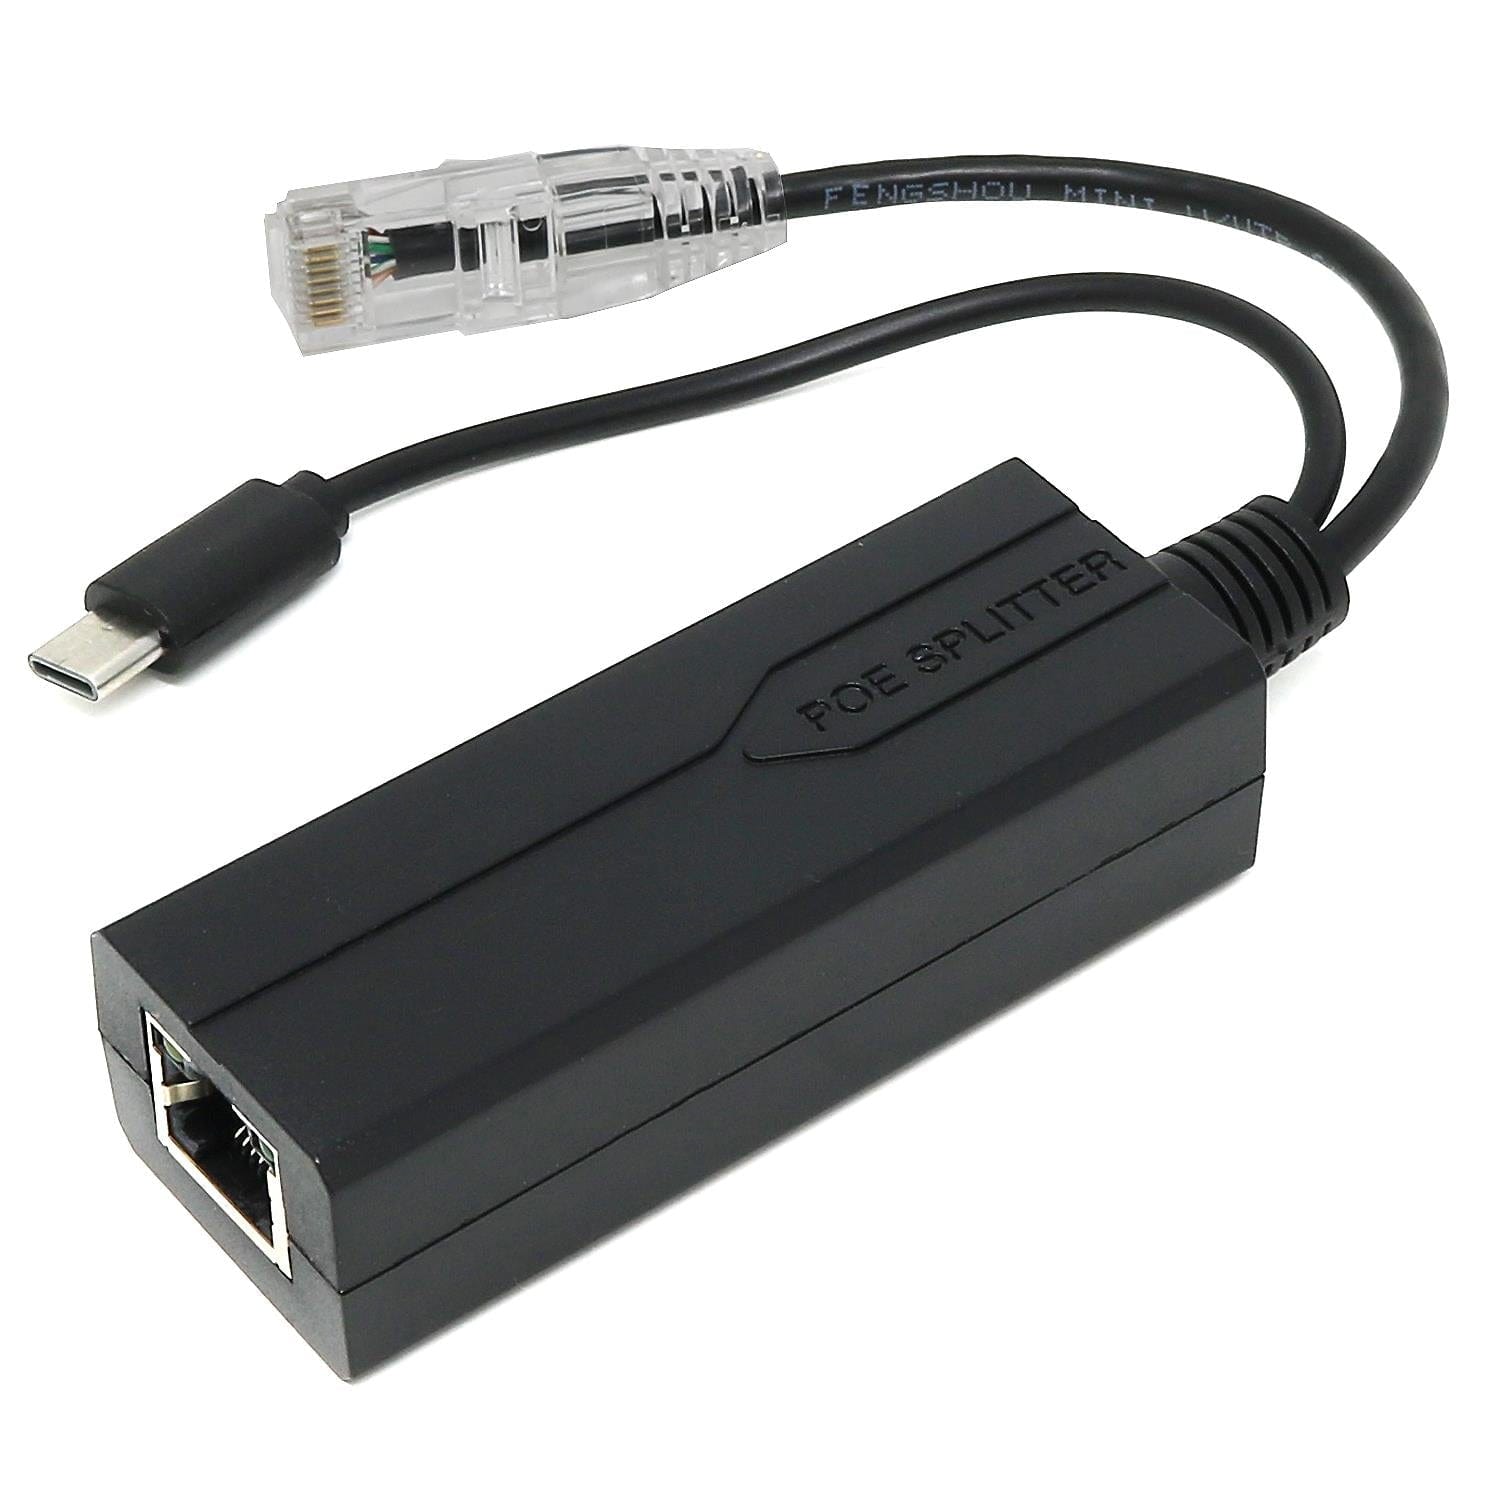 PoE Splitter 48V to 5V 2A USB-C